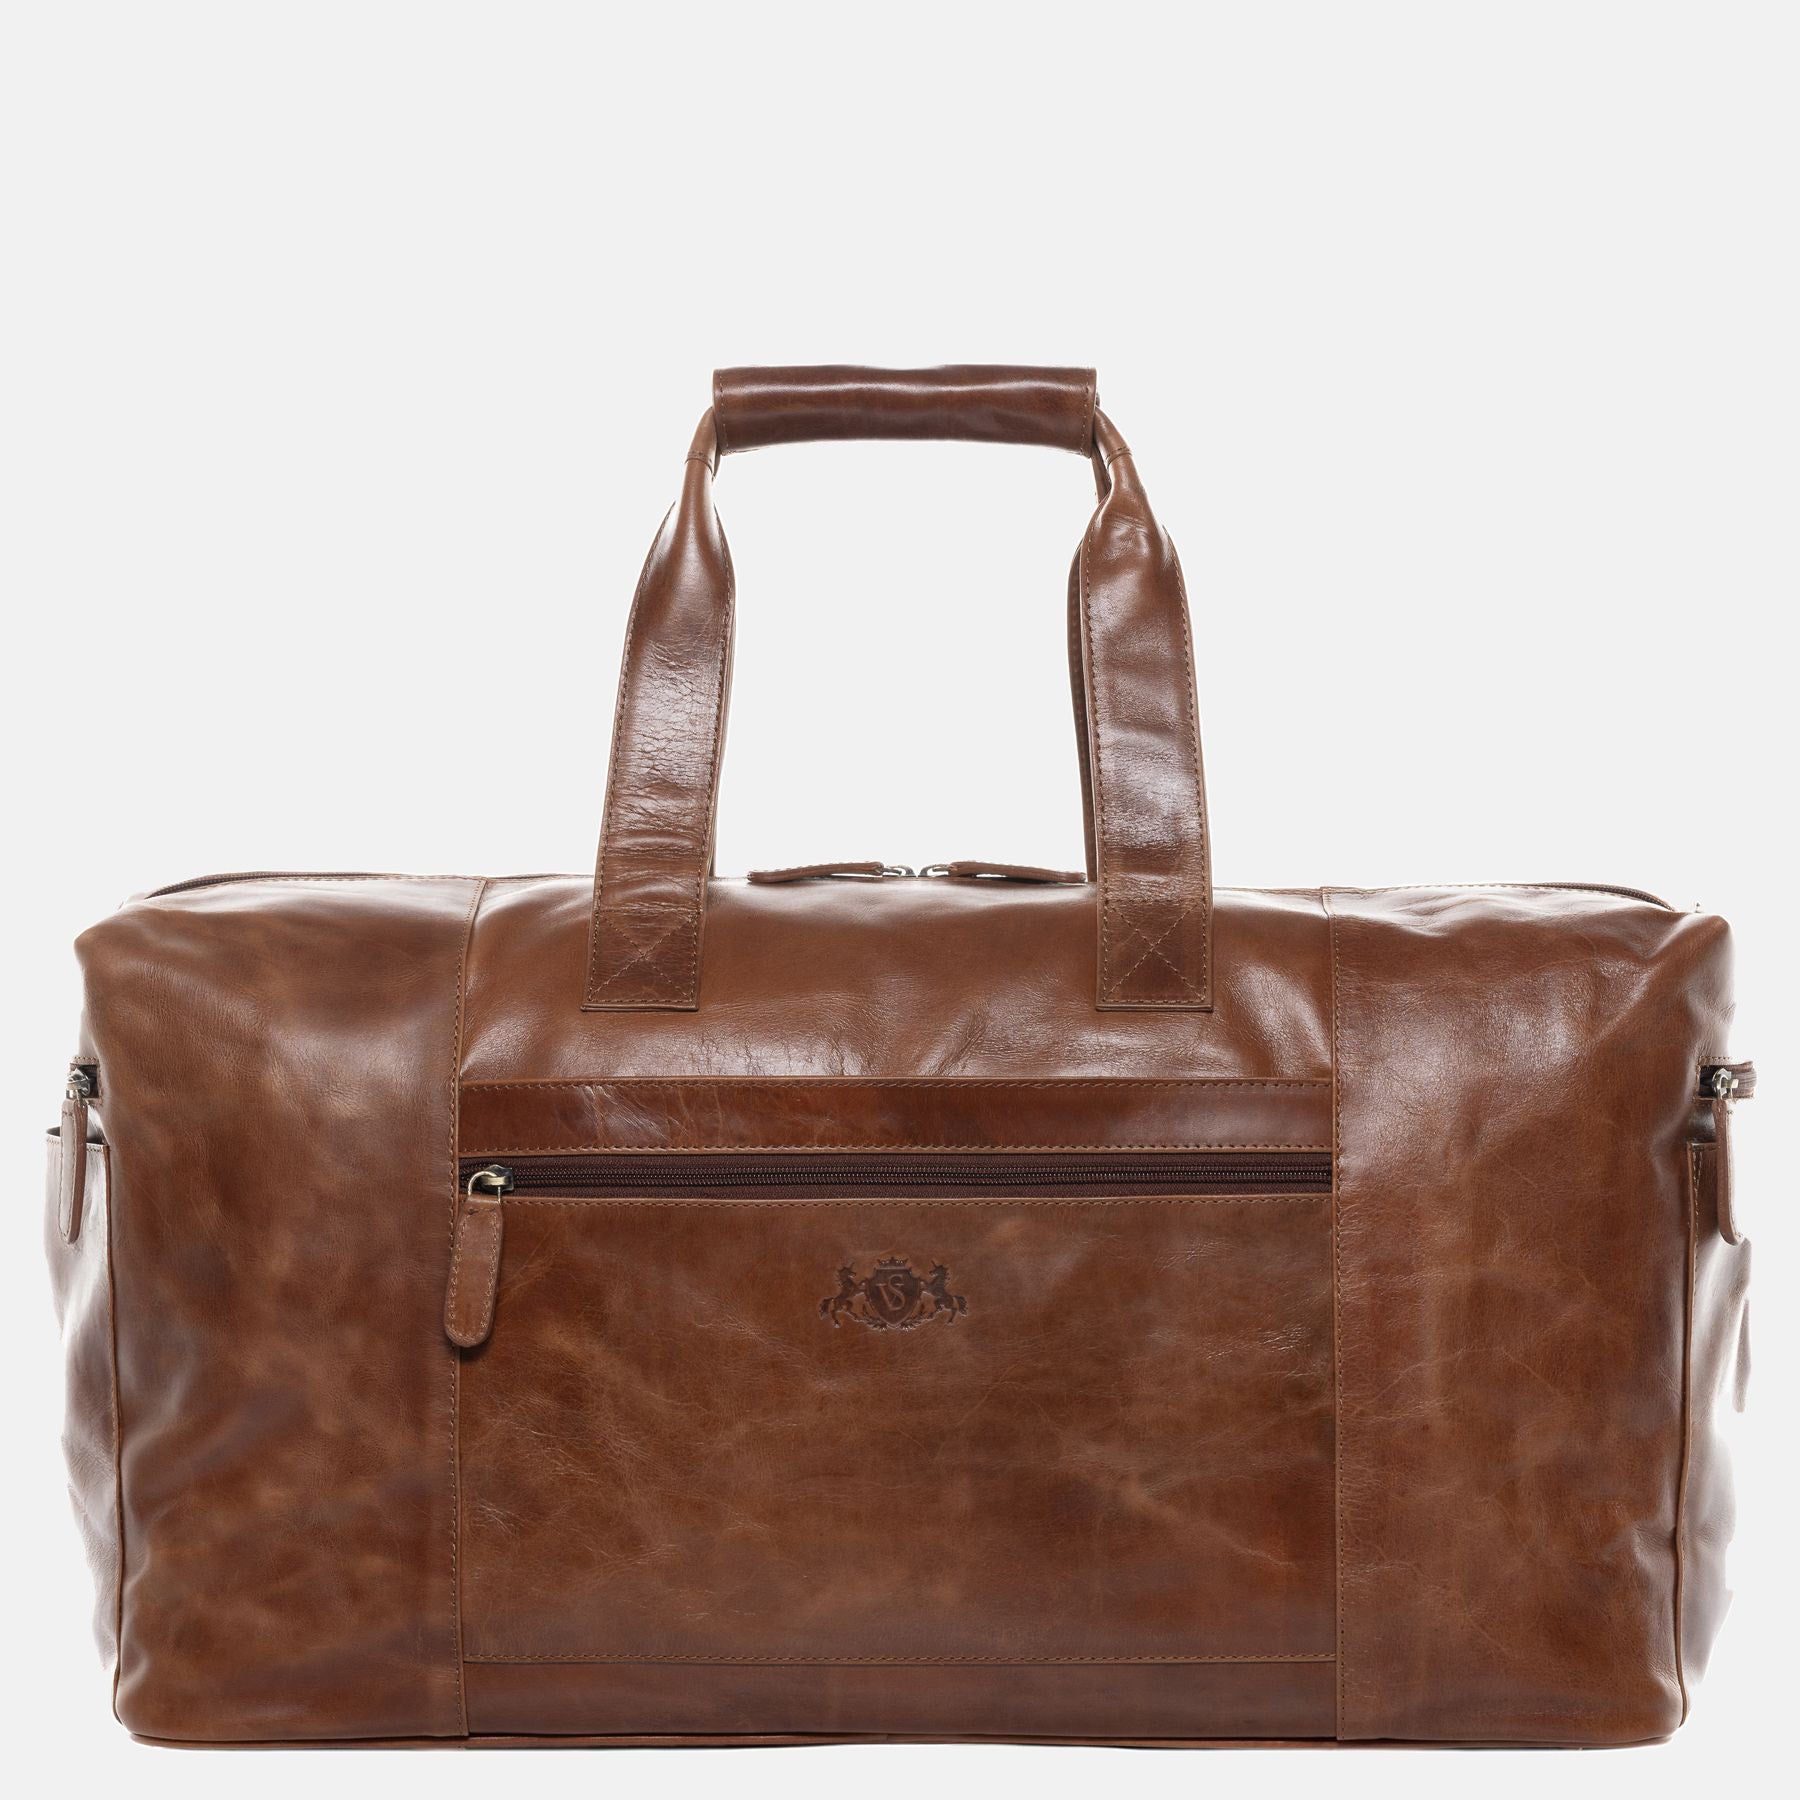 Travel bag BRISTOL natural leather light brown